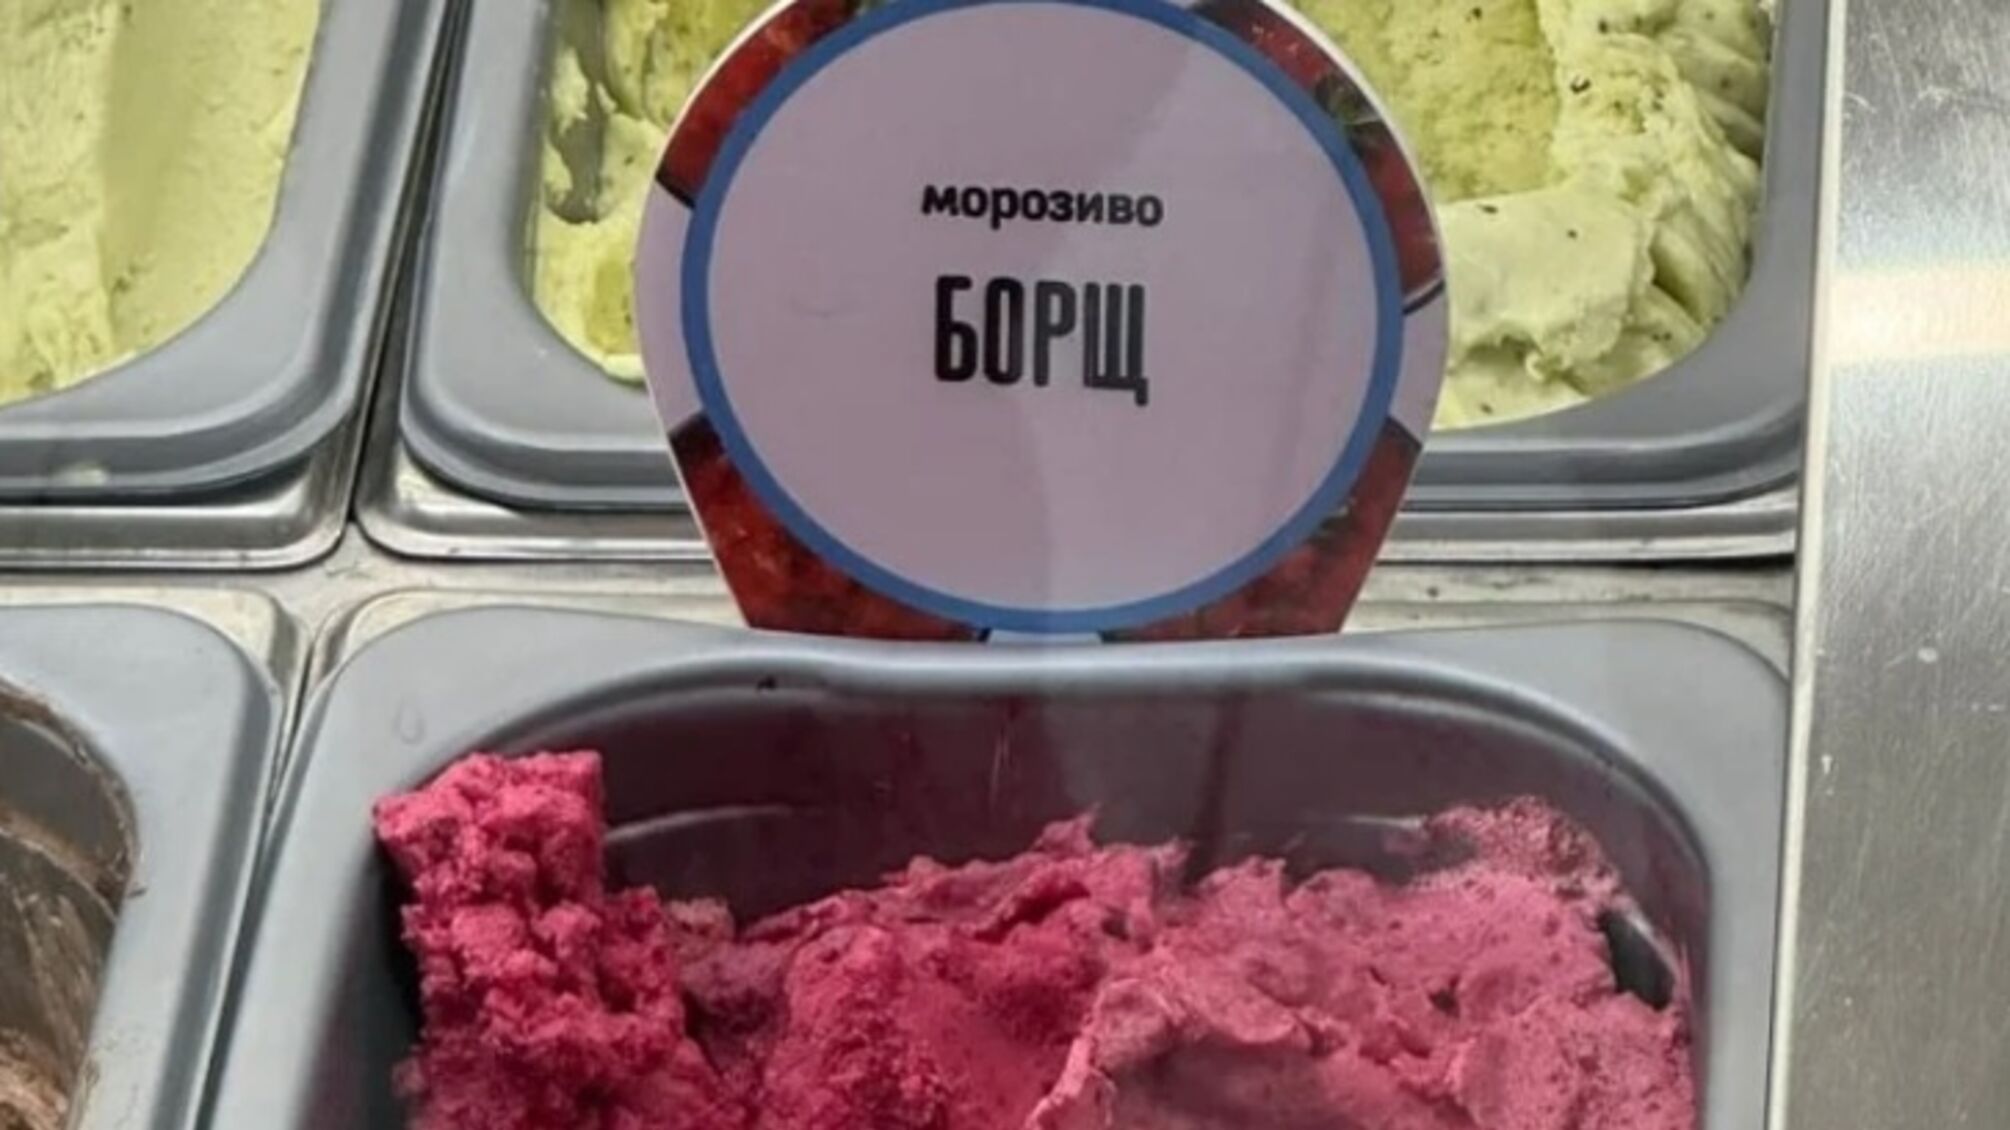 Шеф-повар Клопотенко стал соавтором мороженого из… борща